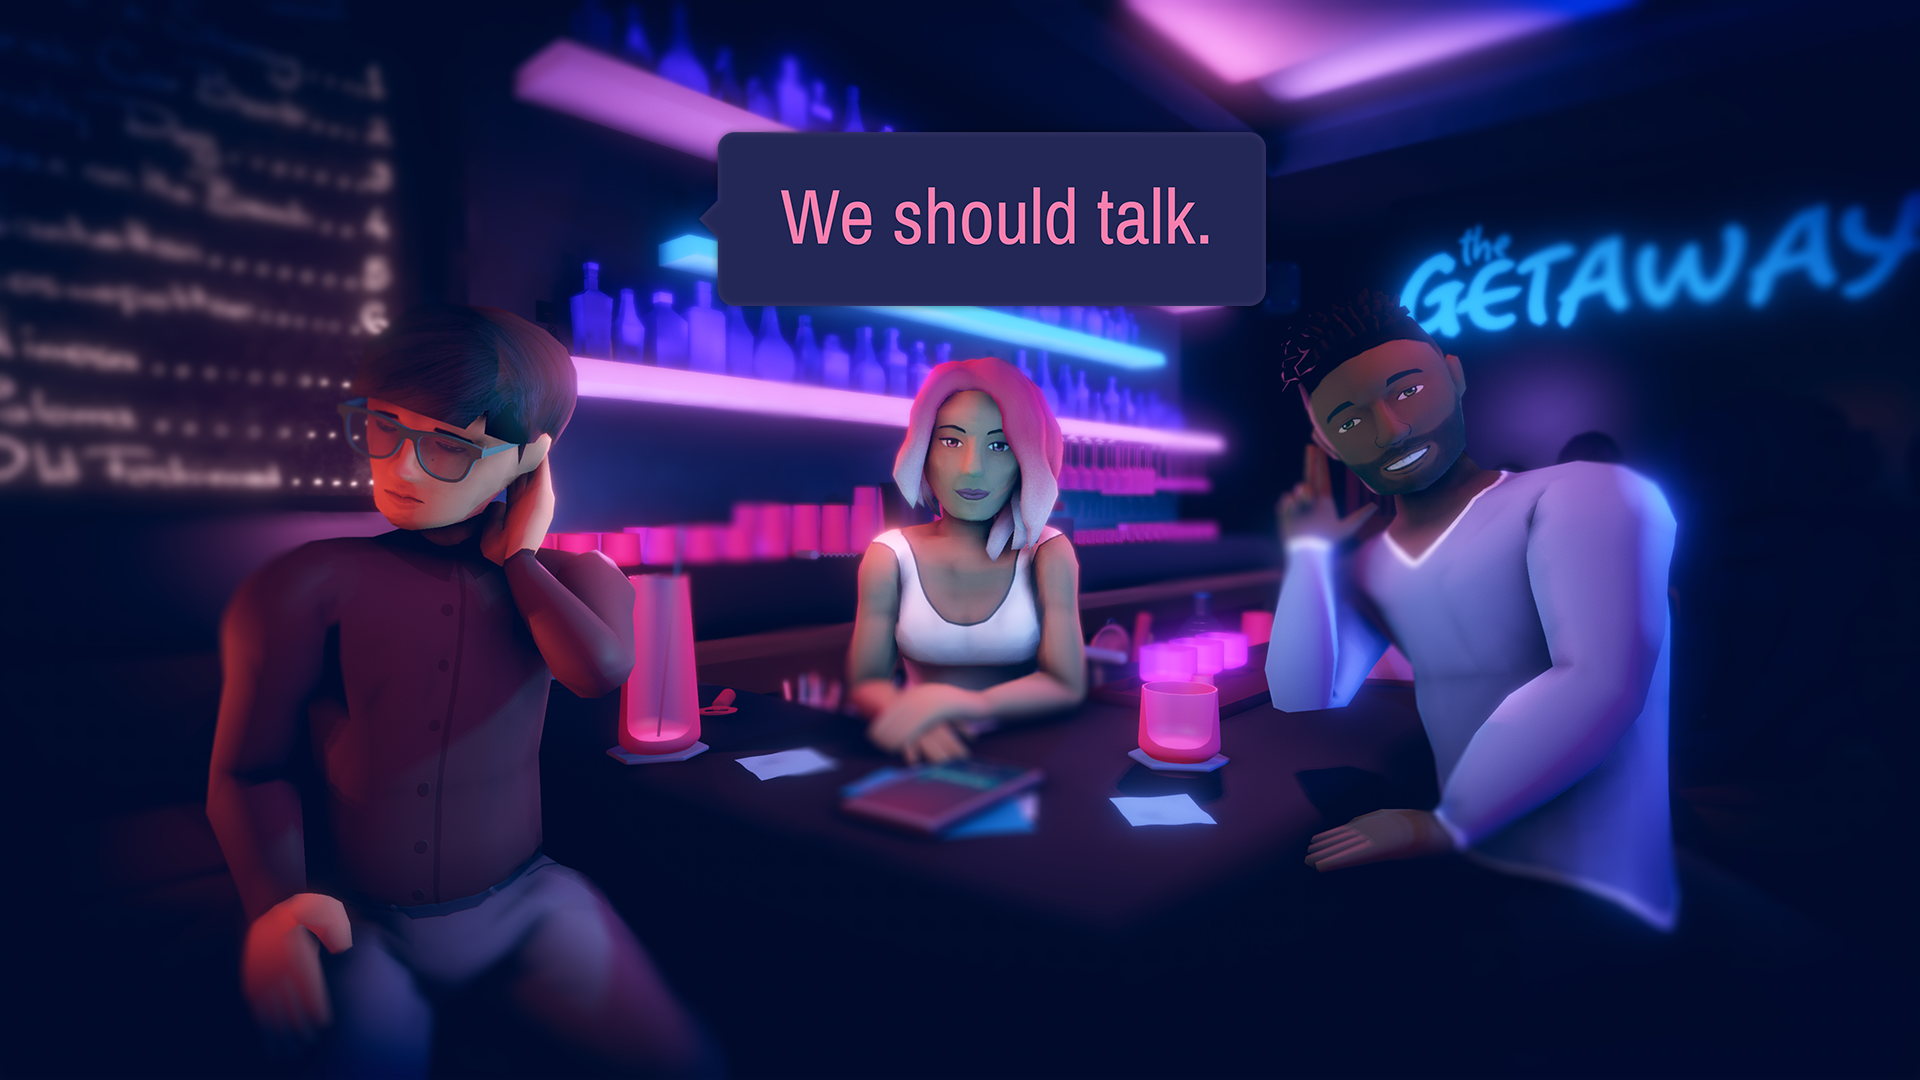 We should talk.